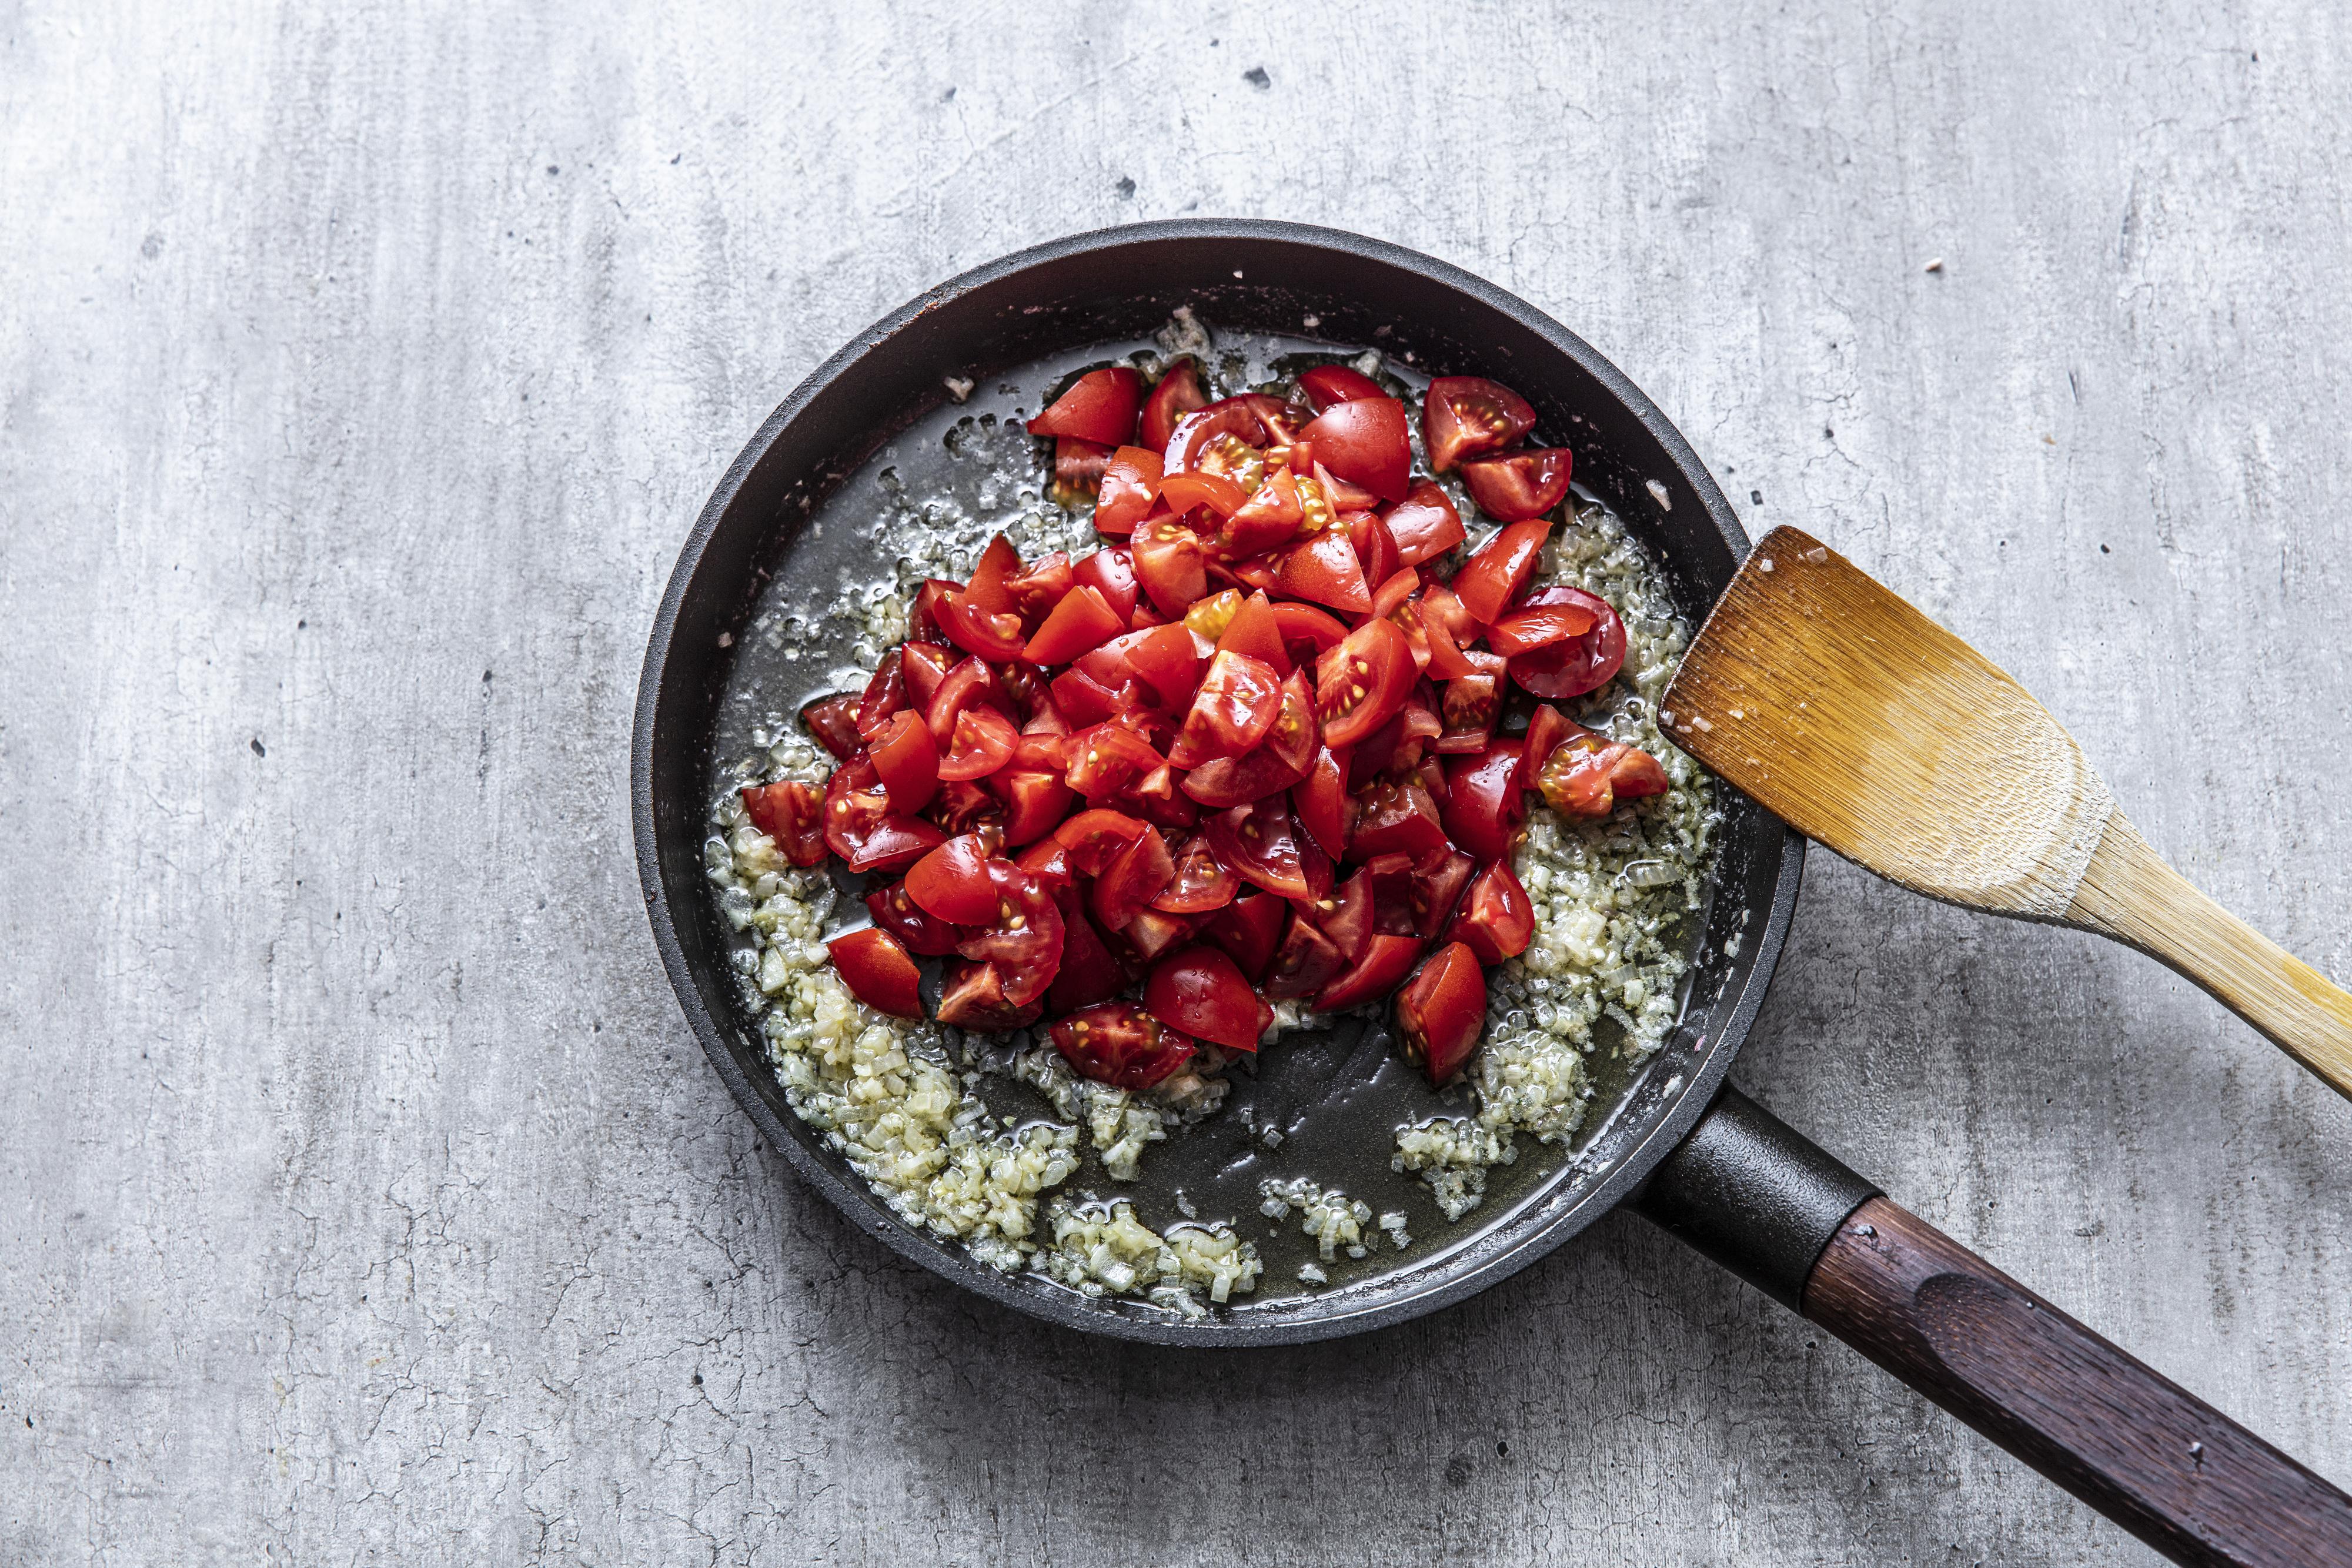 Tilsett tomatene og chili. La det syde i 10 -15 minutter til tomatene er helt bløte og «sausete». 